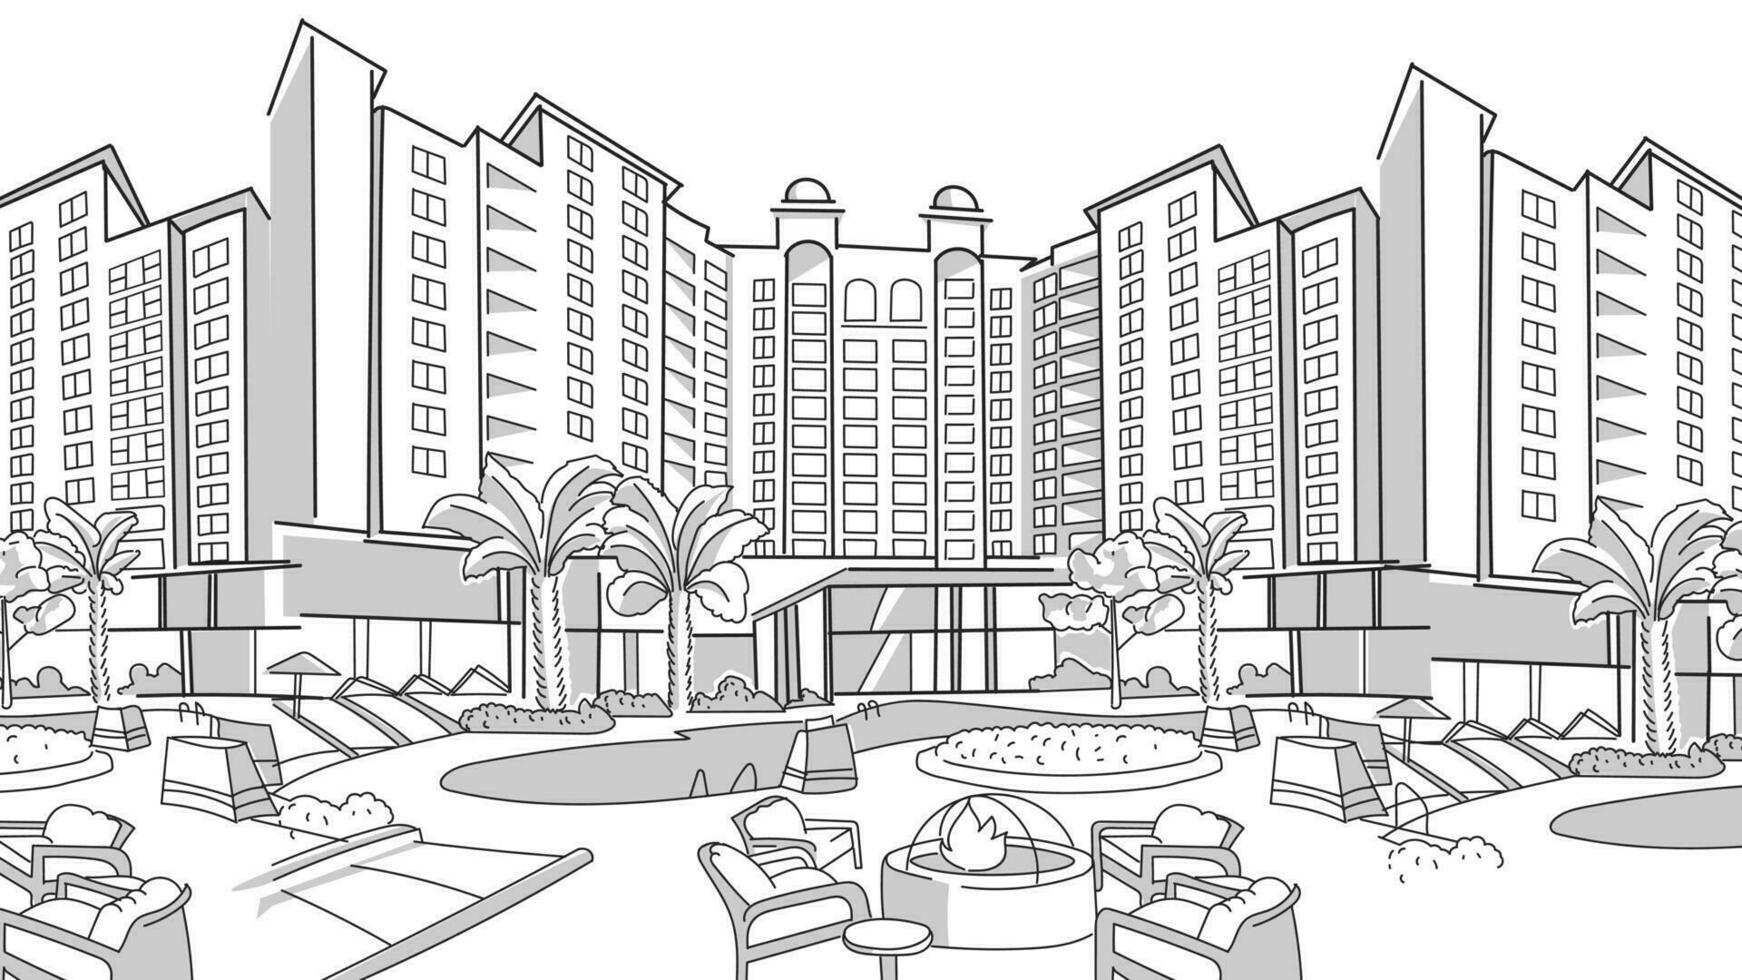 ao ar livre de praia residencial hotel, recorrer com Palma árvores, mesa, cadeira, piscina, mínimo realista estilo vetor ilustração